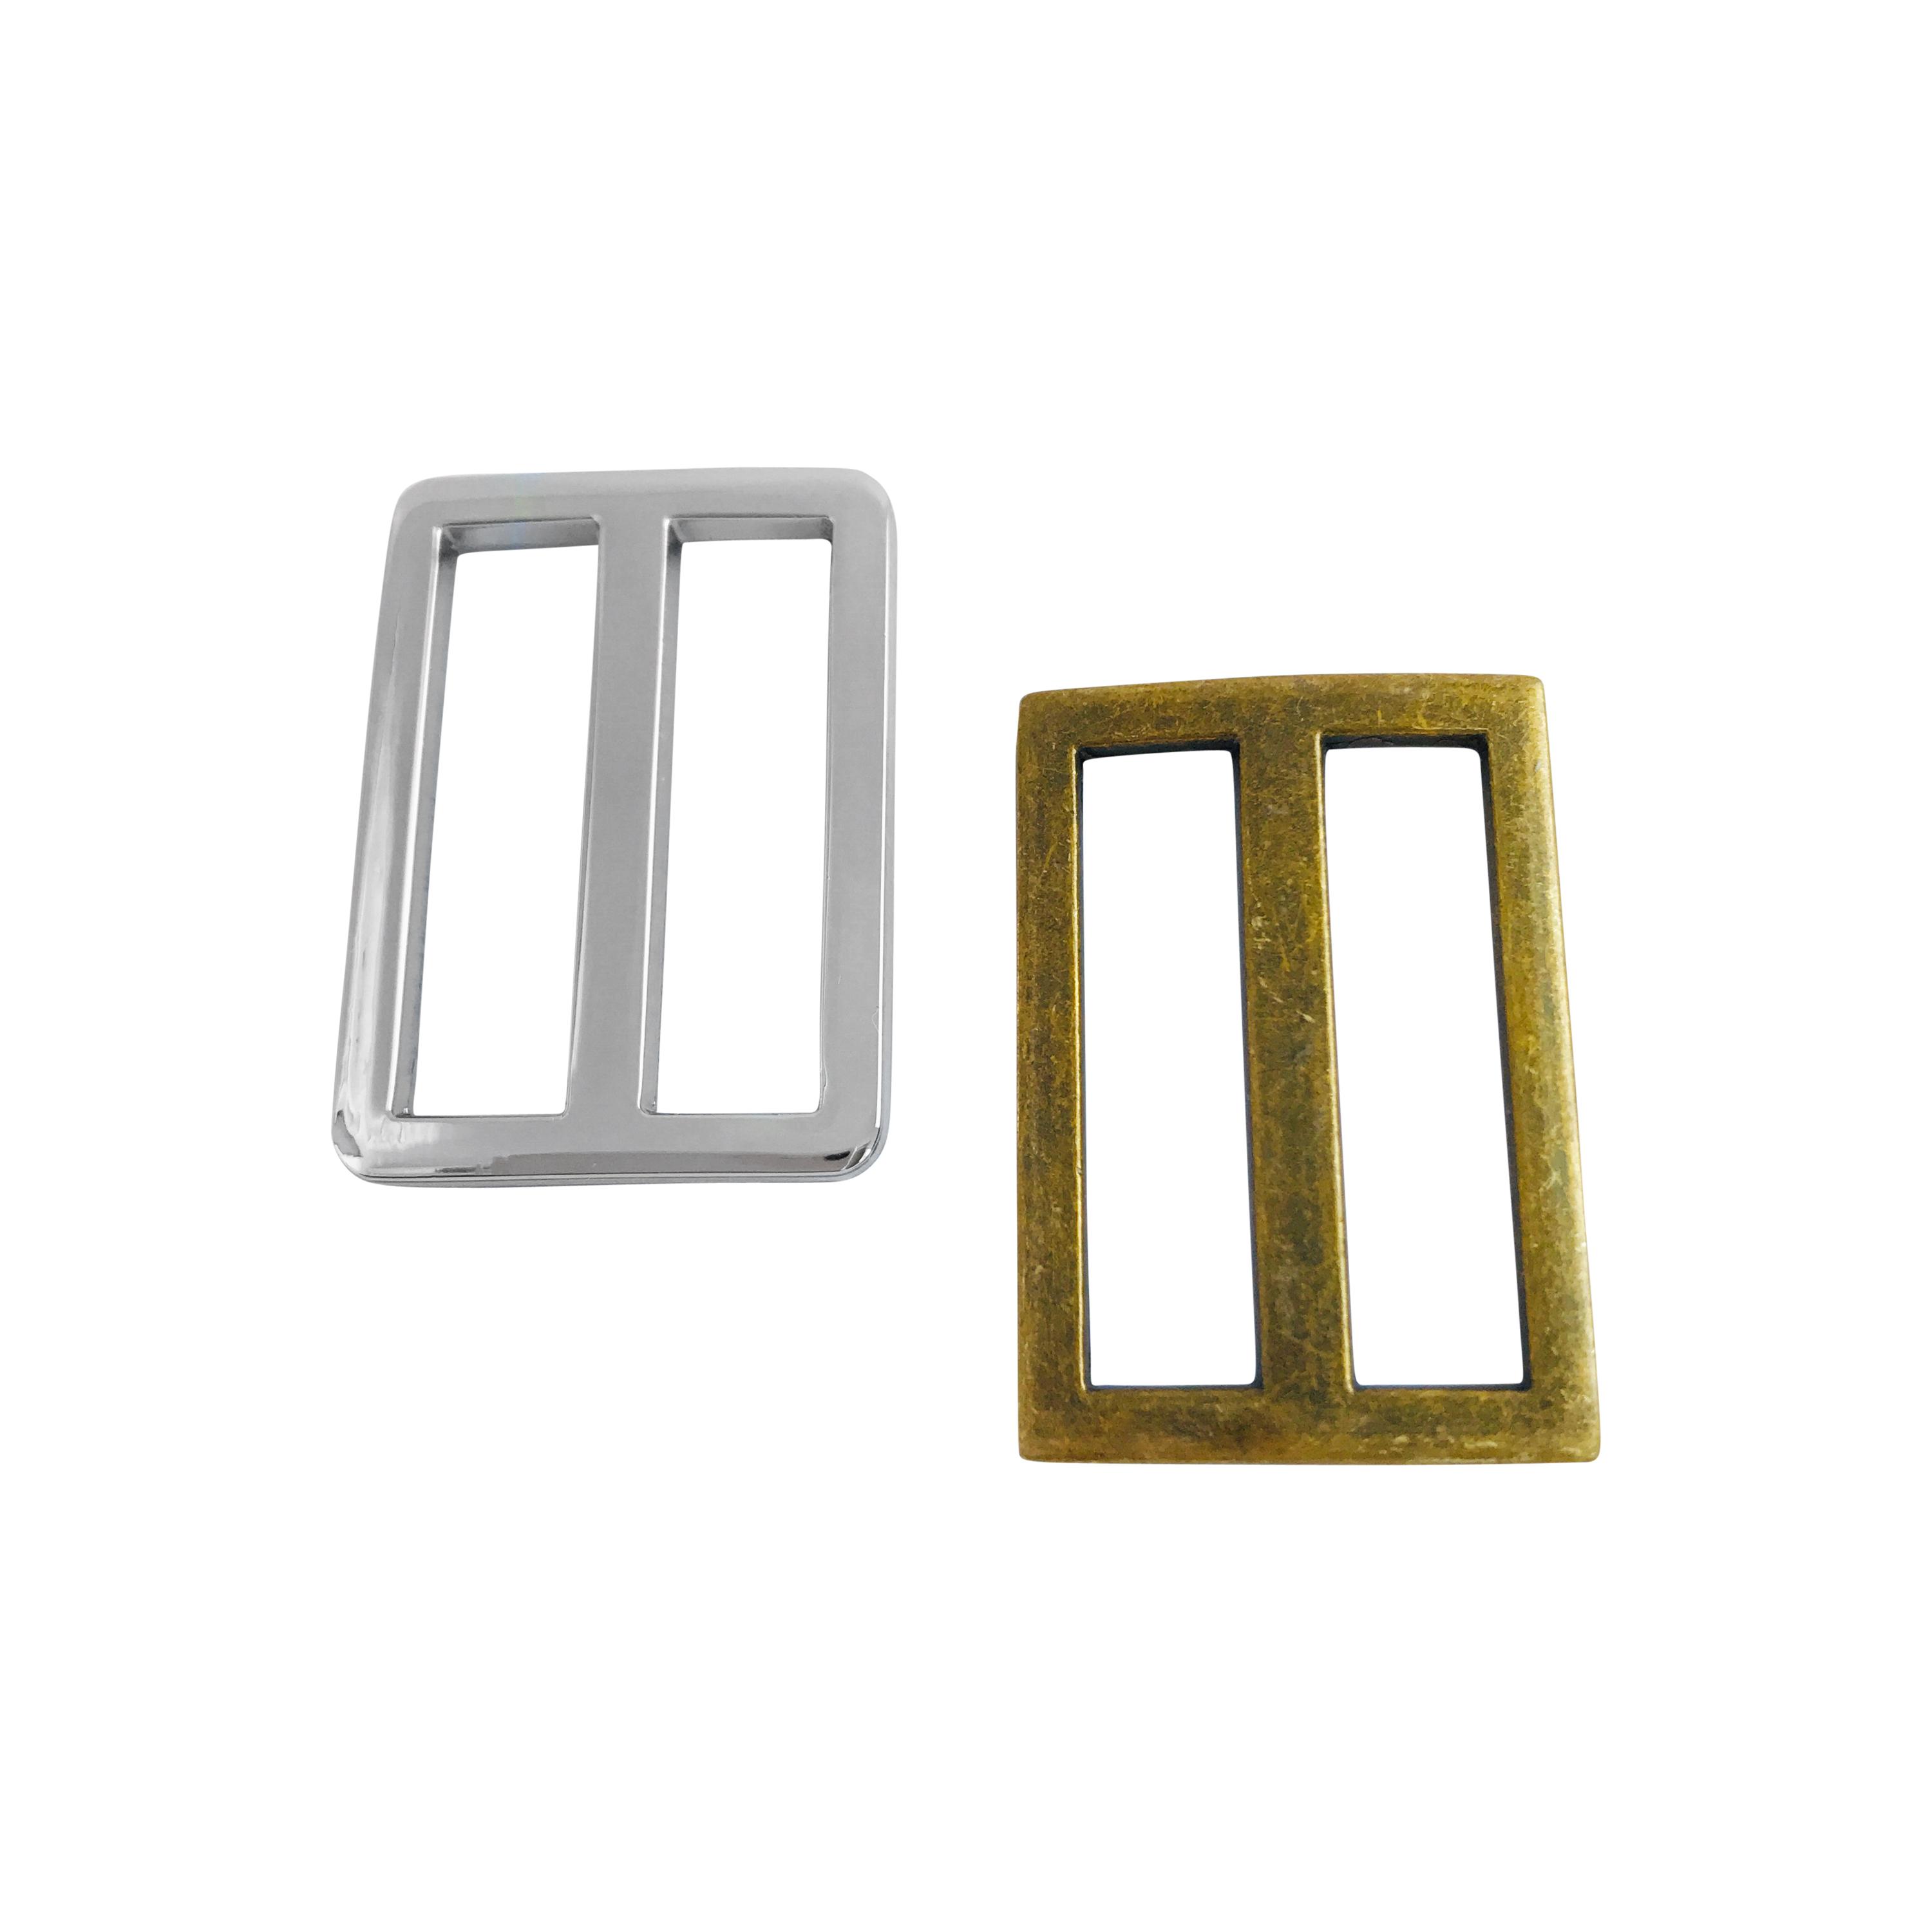 1 1/4" (32mm) wide slider buckle in silver or antique brass to make adjustable bag handles